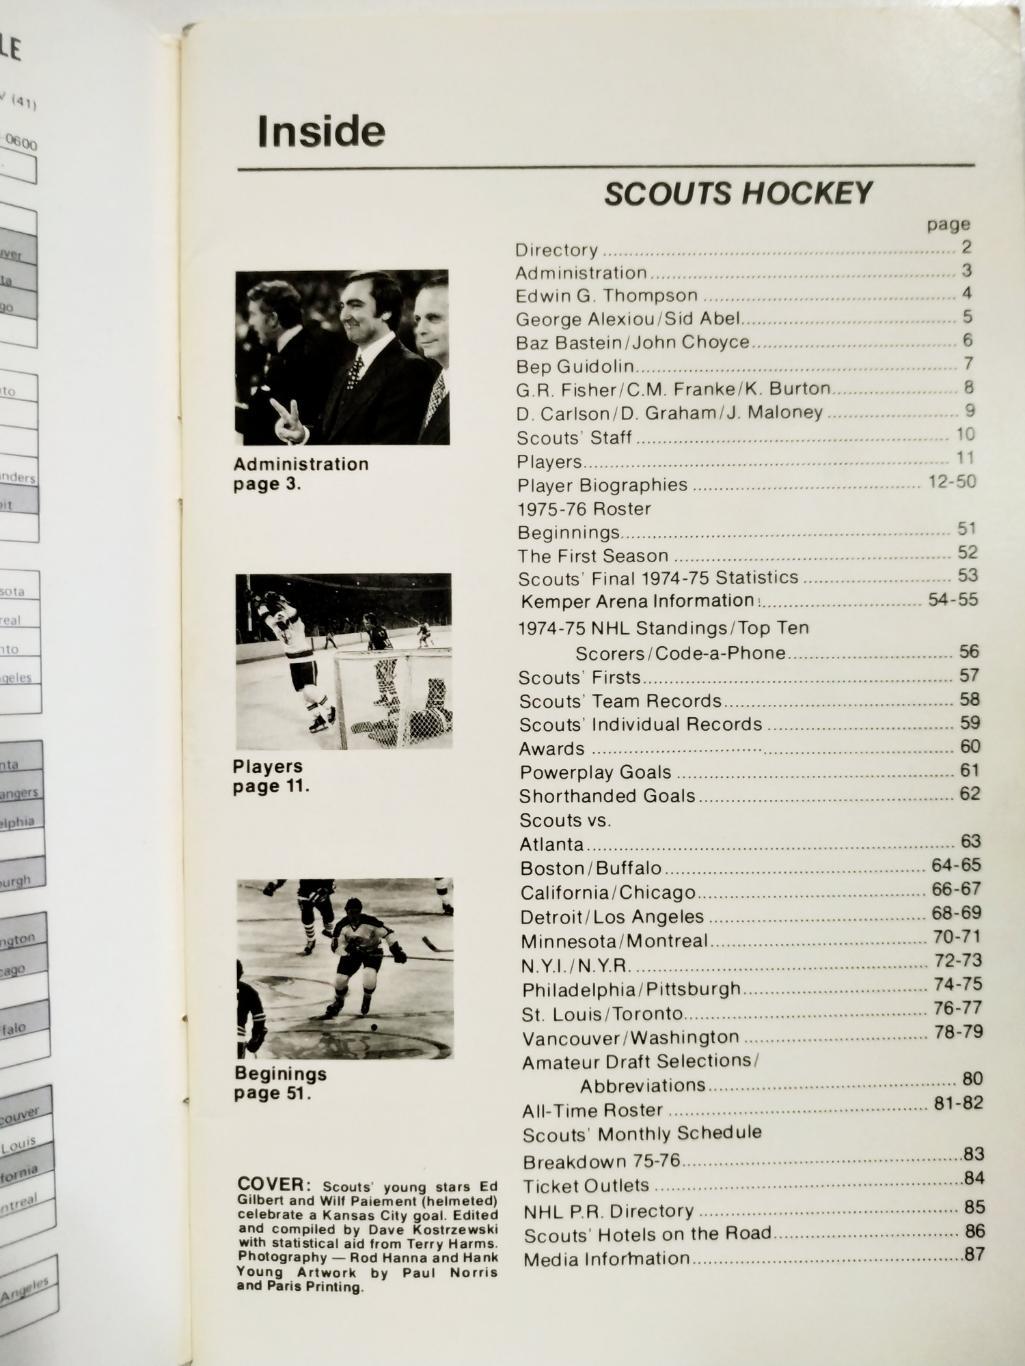 ХОККЕЙ СПРАВОЧНИК ЕЖЕГОДНИК НХЛ КАНЗАС 1975-76 KANSAS CITY SCOUTS MEDIA GUIDE 1